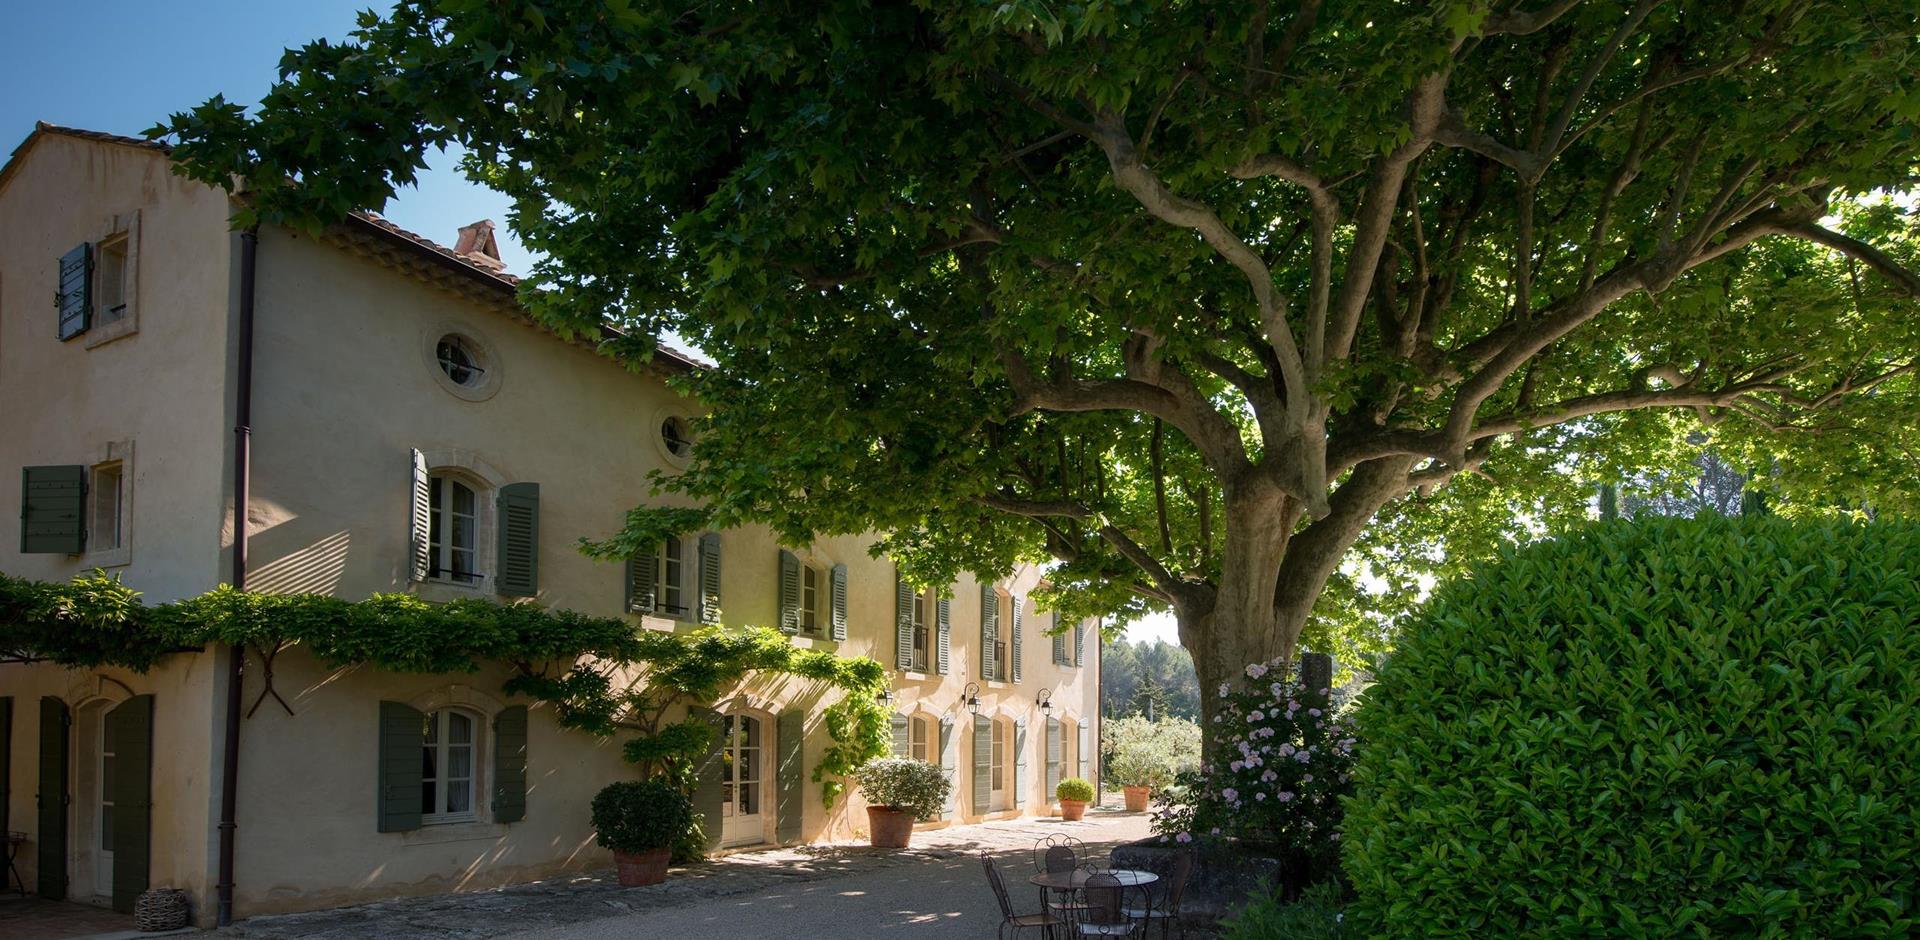 Exterior view, La Bastide de St Remy, Provence.